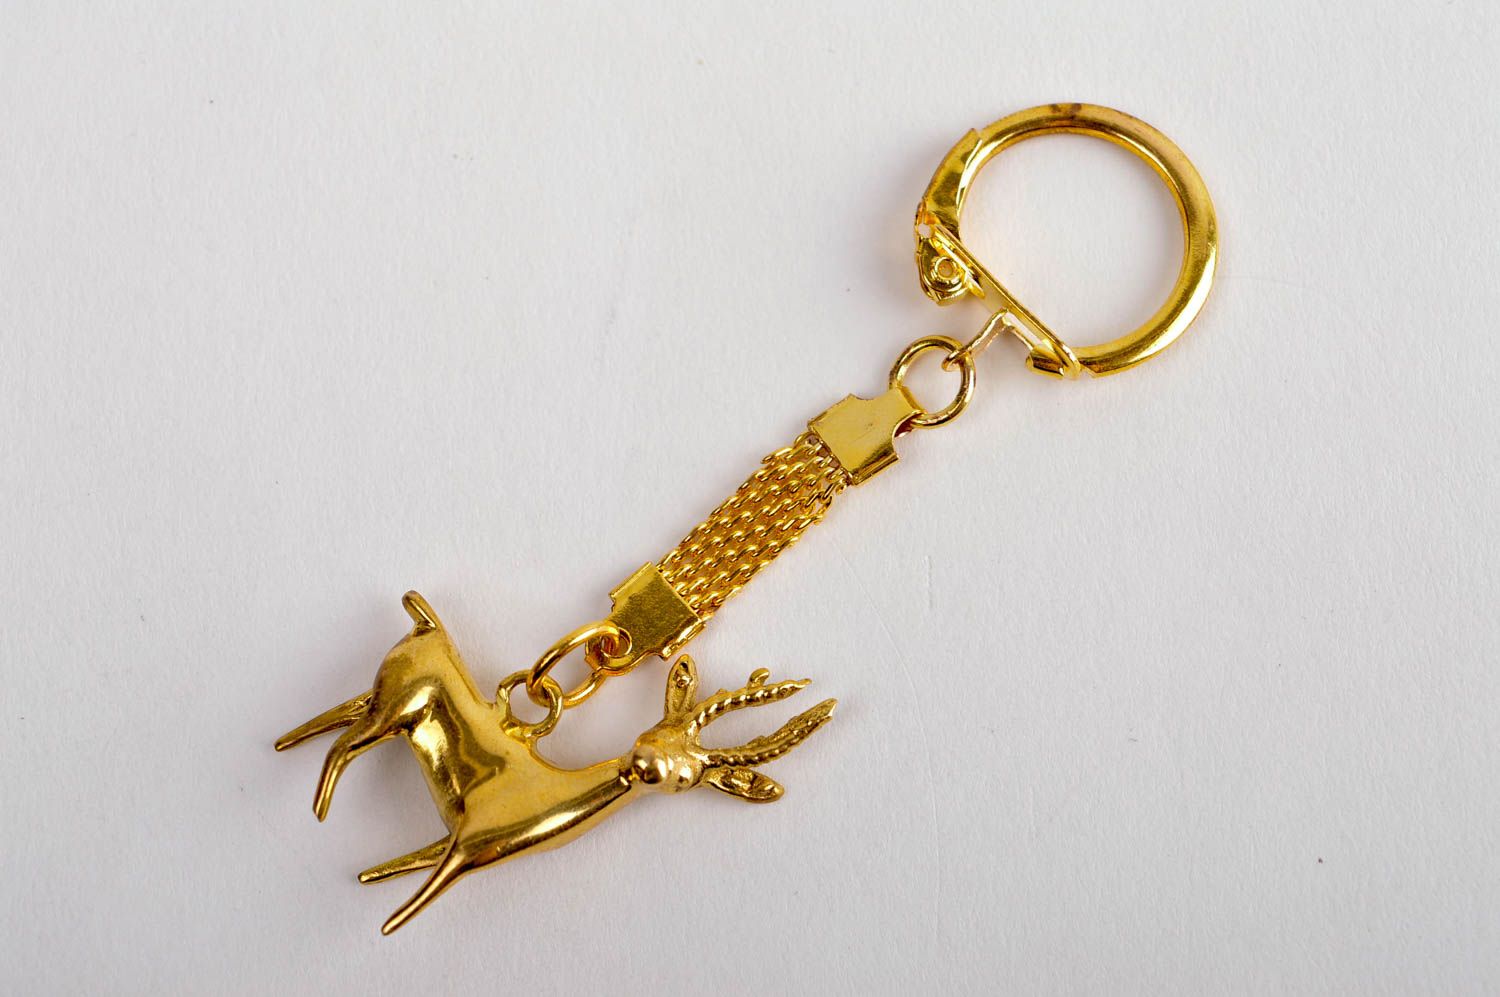 Unusual handmade metal keychain best keychain design handmade accessories photo 4